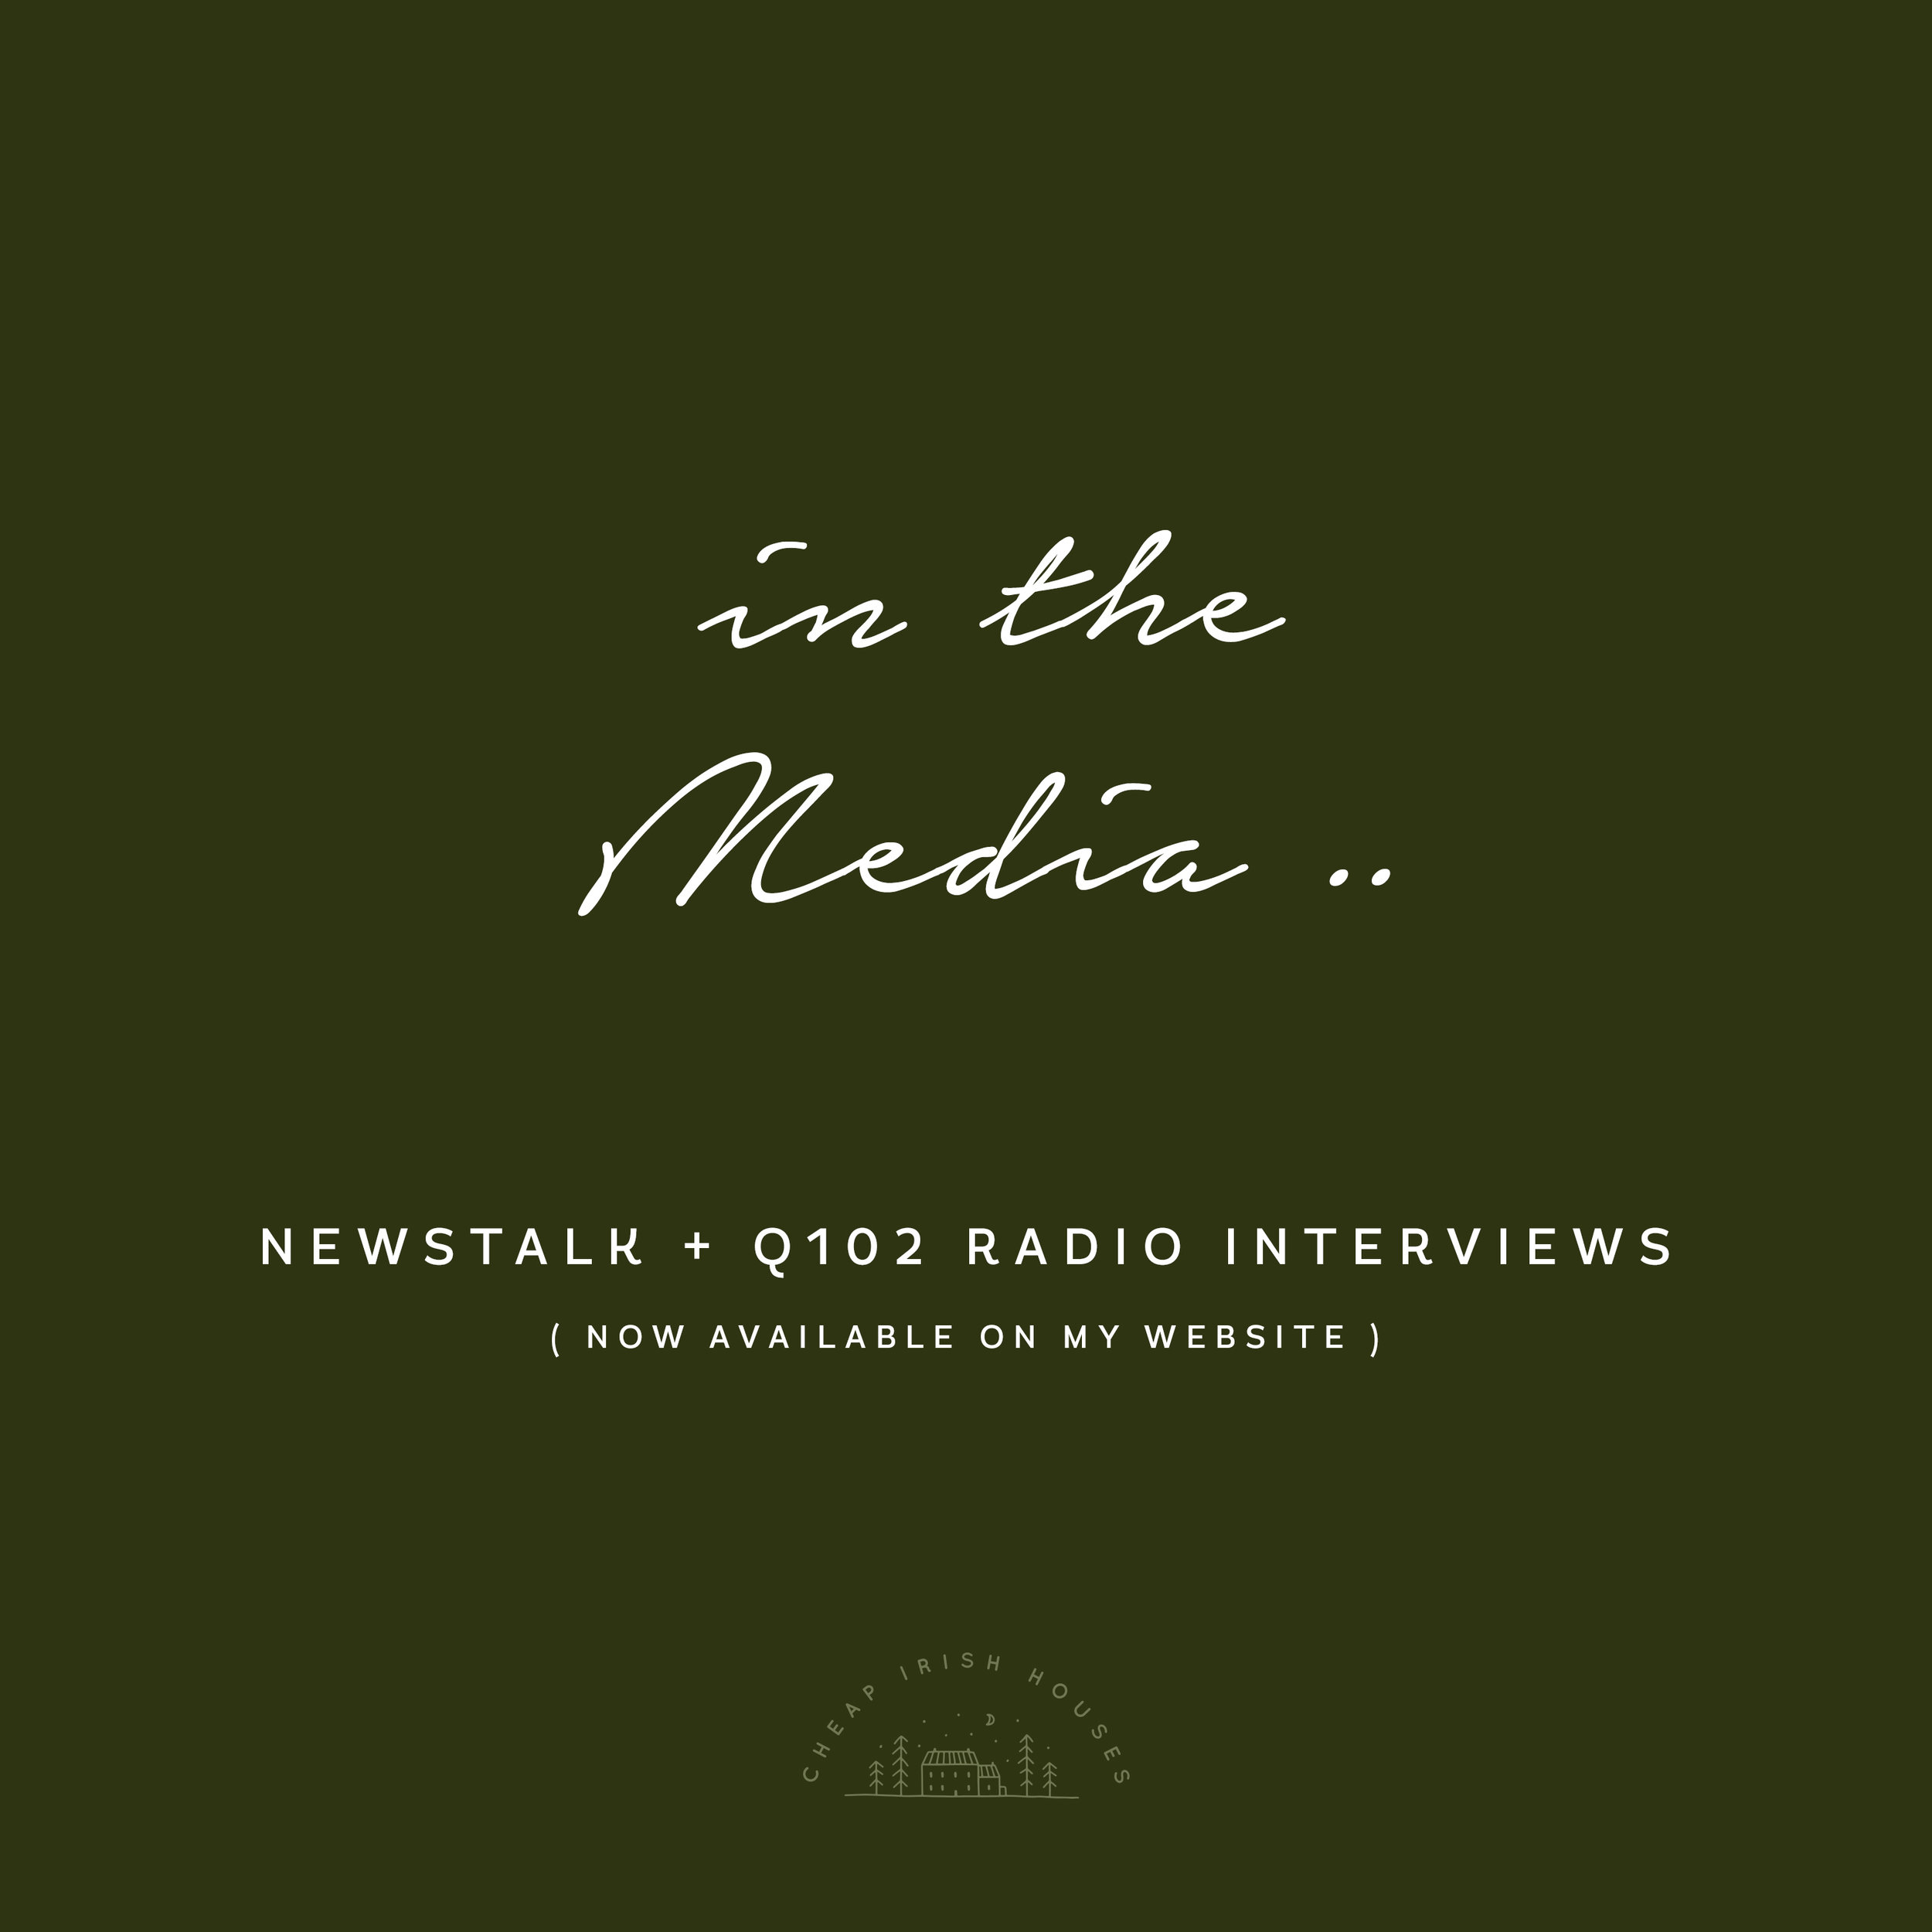 Listen to this weeks radio interviews